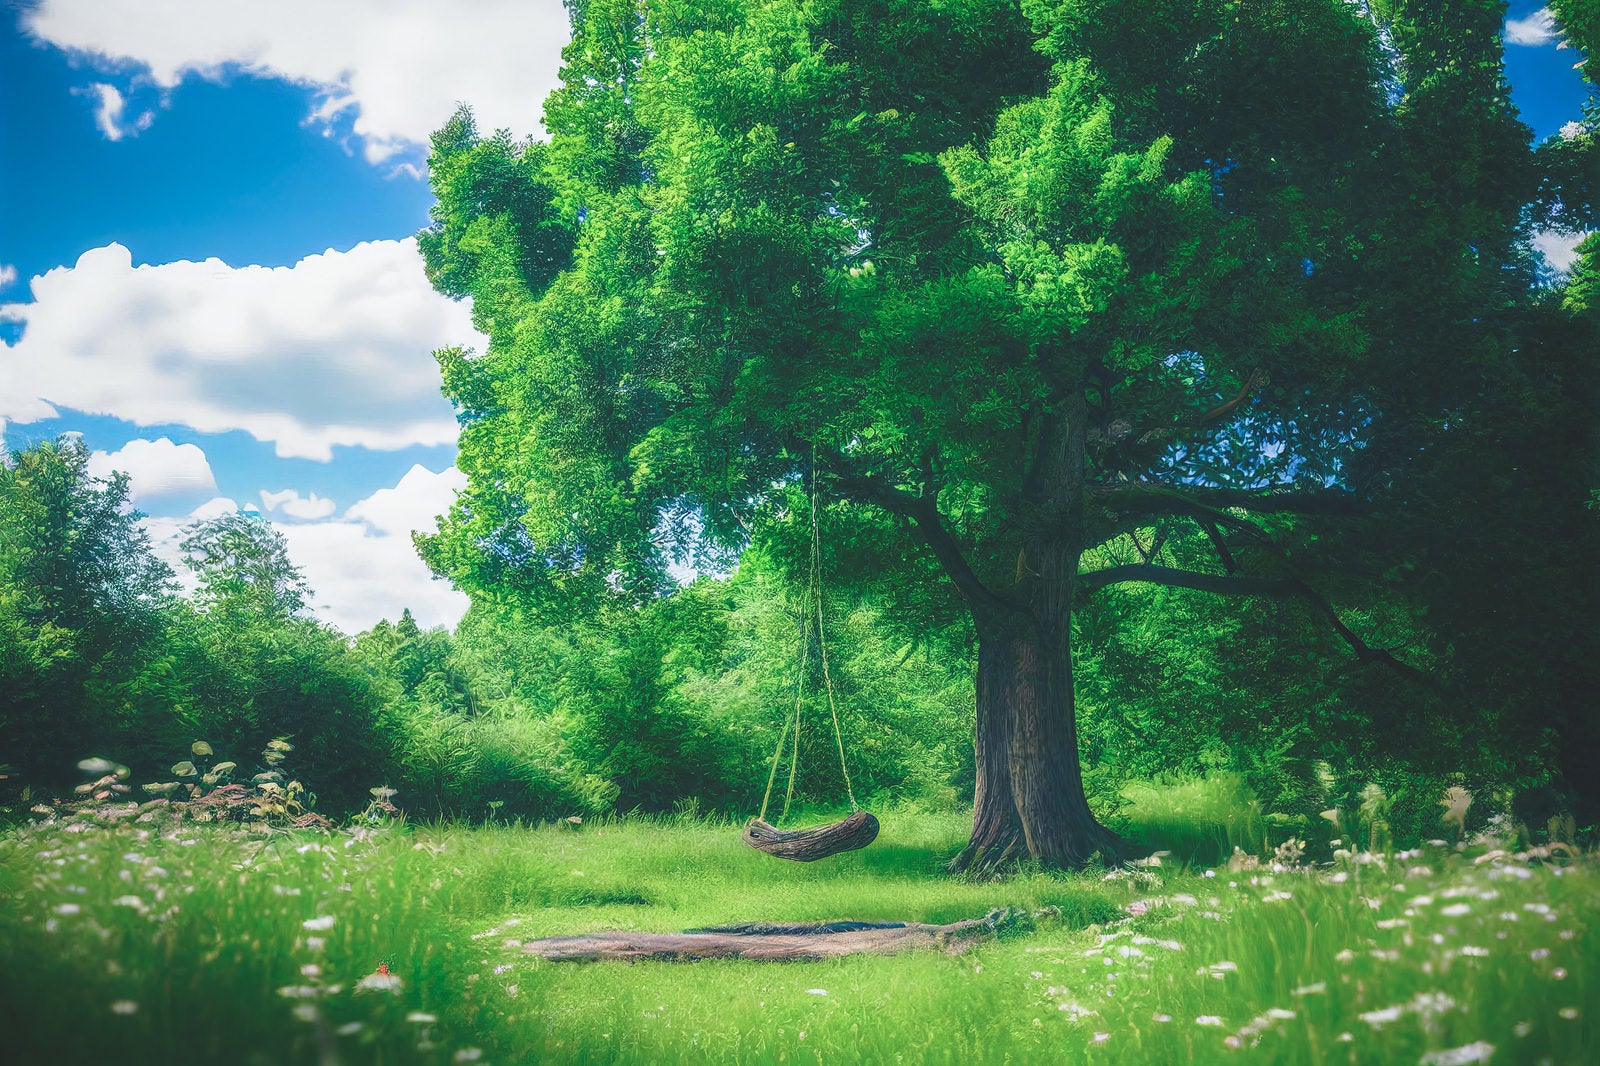 「緑溢れる公園のブランコ」の写真